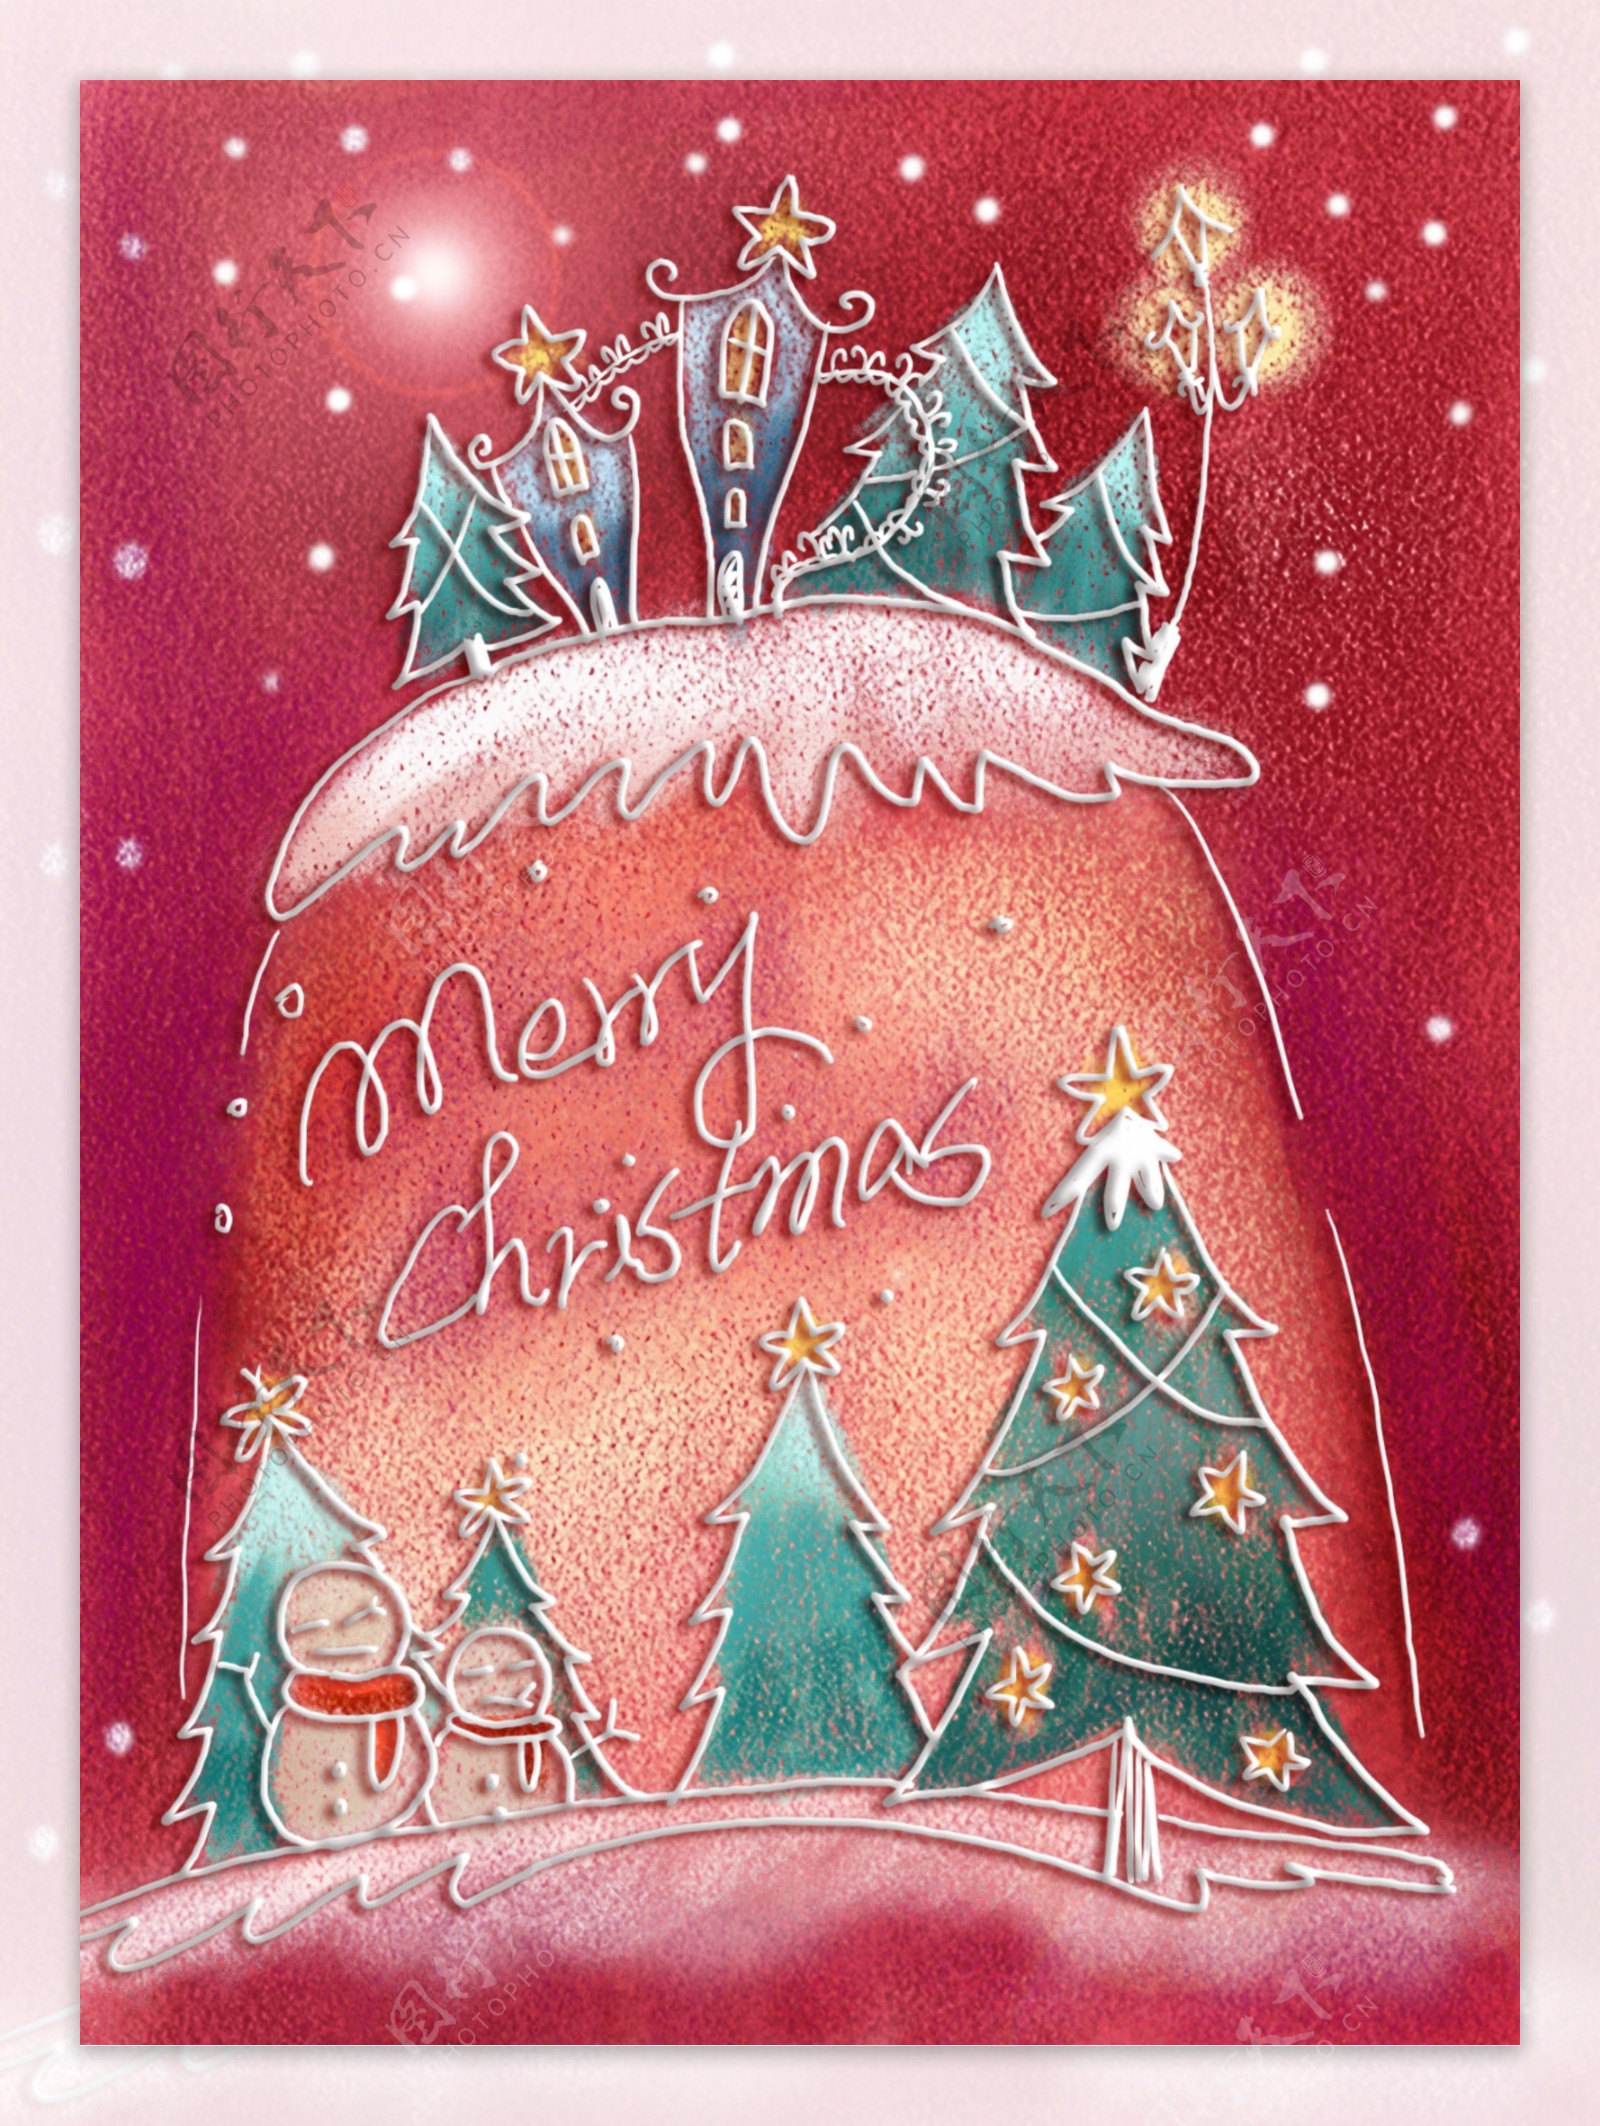 手绘线条圣诞节风景插画图片